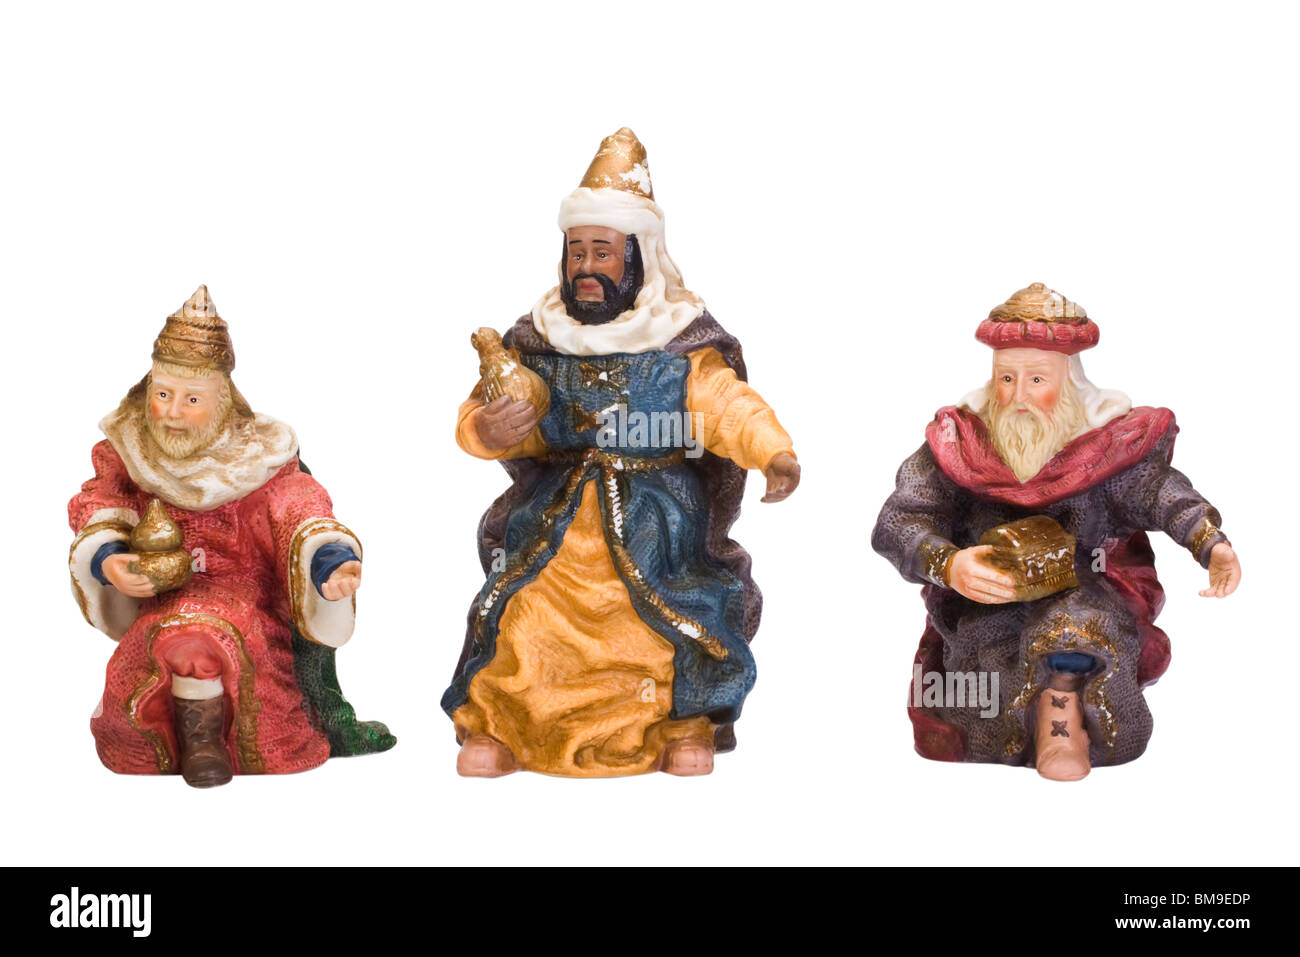 Univers miniatures de Trois Sages Banque D'Images